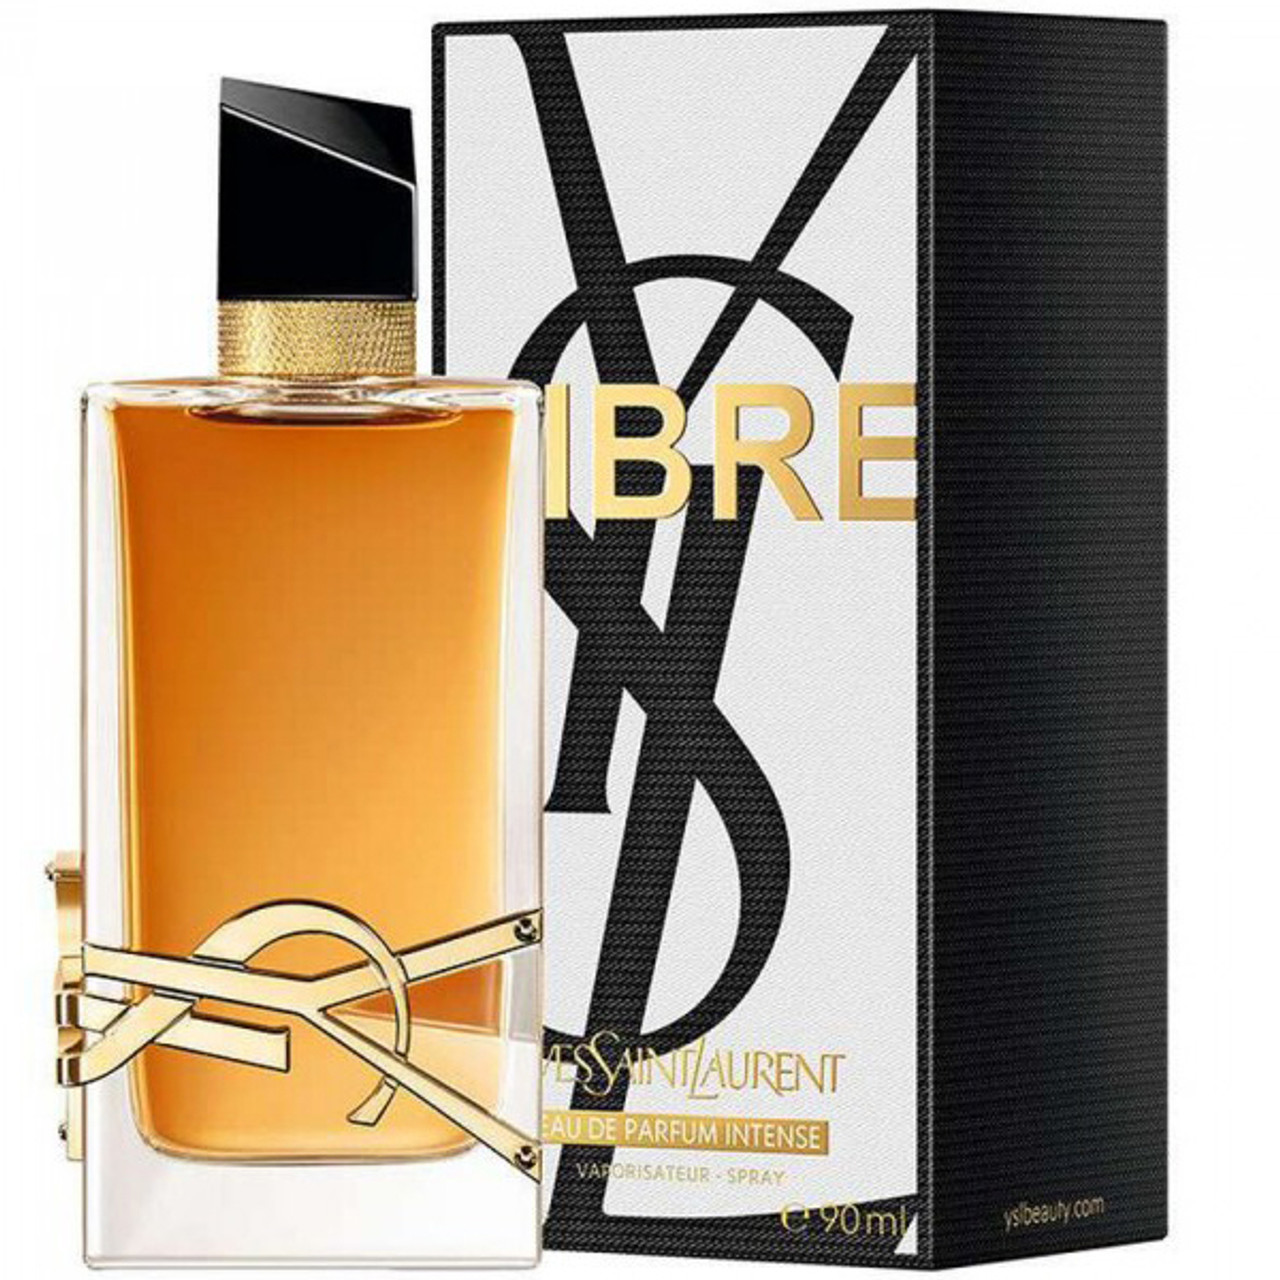 Yves Saint Laurent Libre for Women 1.0 oz Eau de Parfum Intense Spray